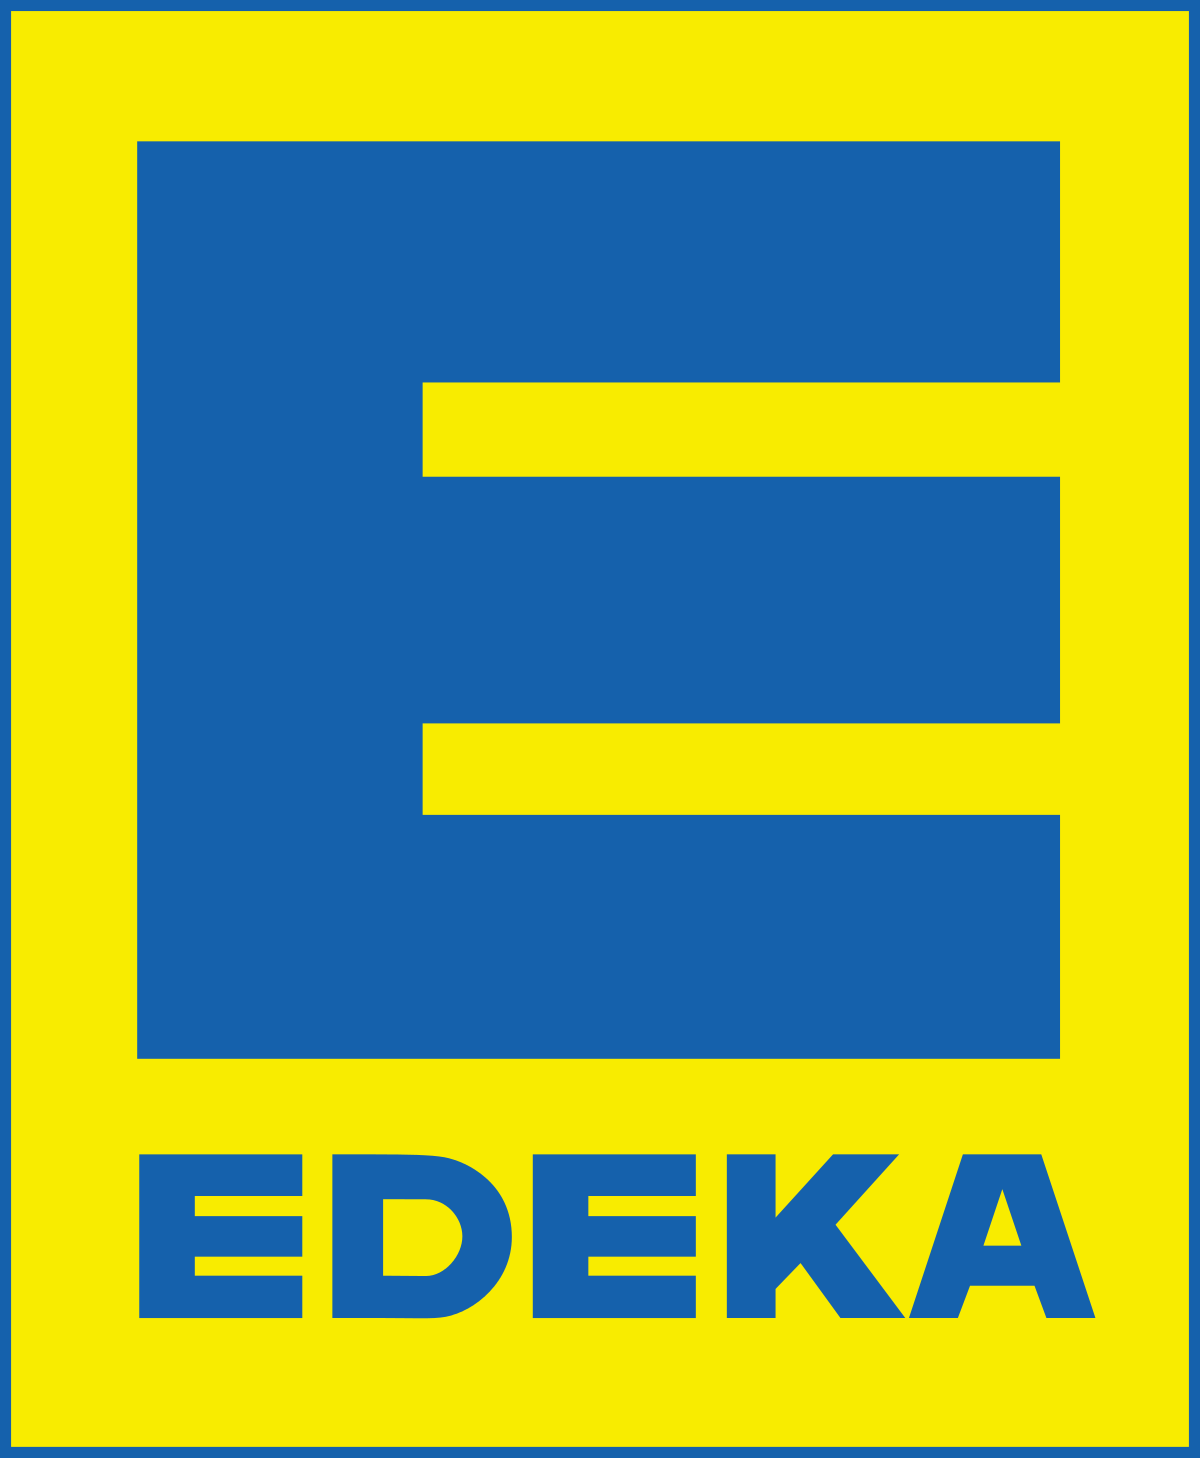 Edeka Logo - Edeka – Wikipedia